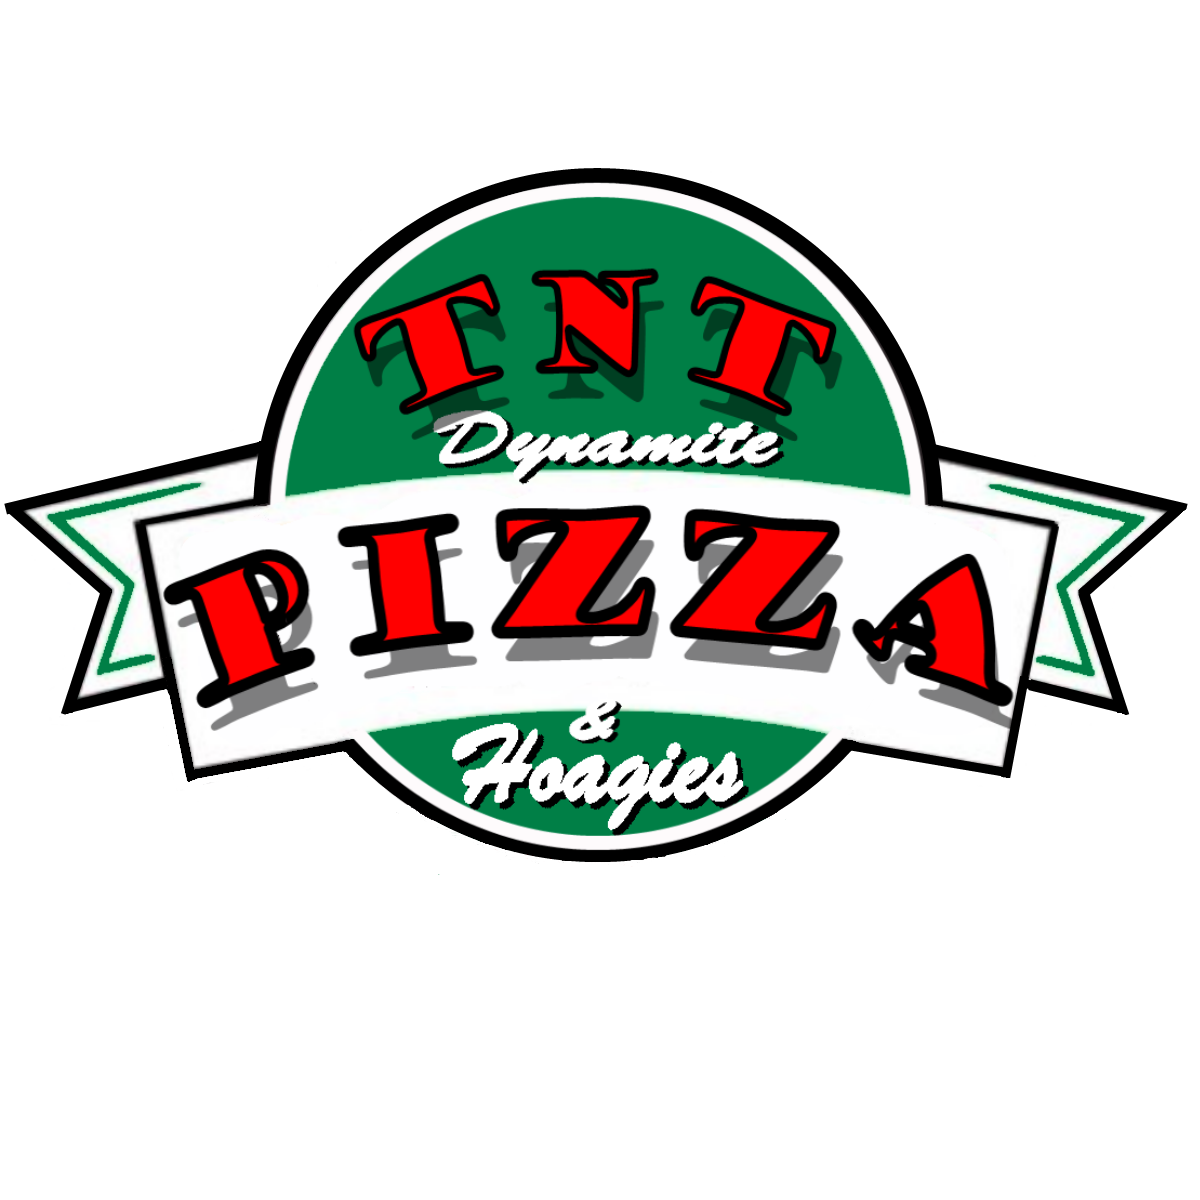 TNT Dynamite Pizza & Hoagies - Menu